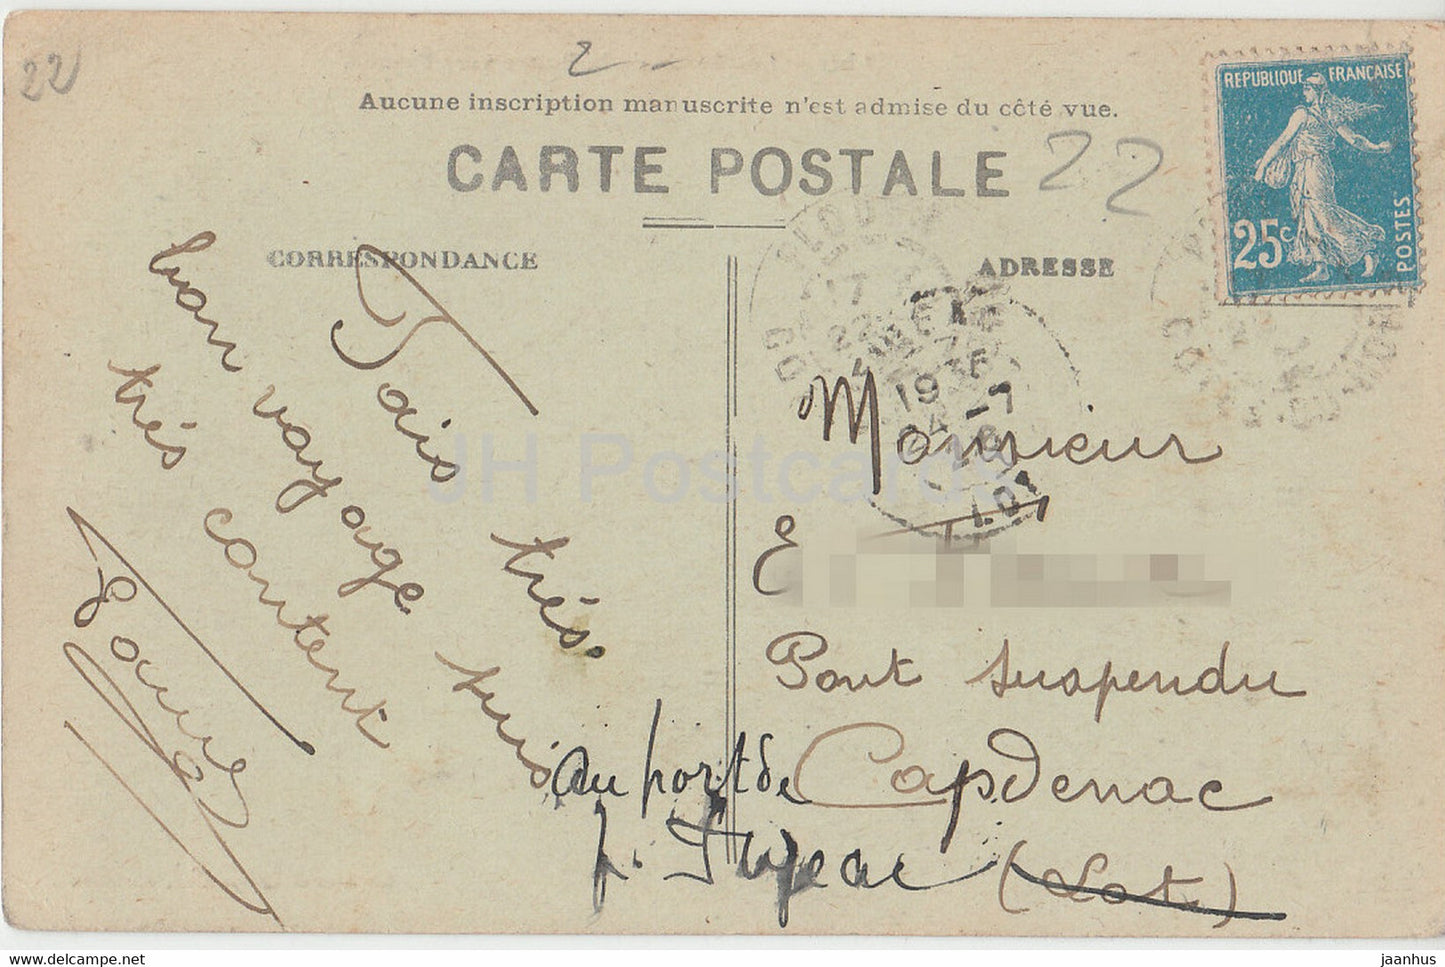 17 bis - Les Bords de la Rance vers Plouer - old postcard - 1926 - France - used